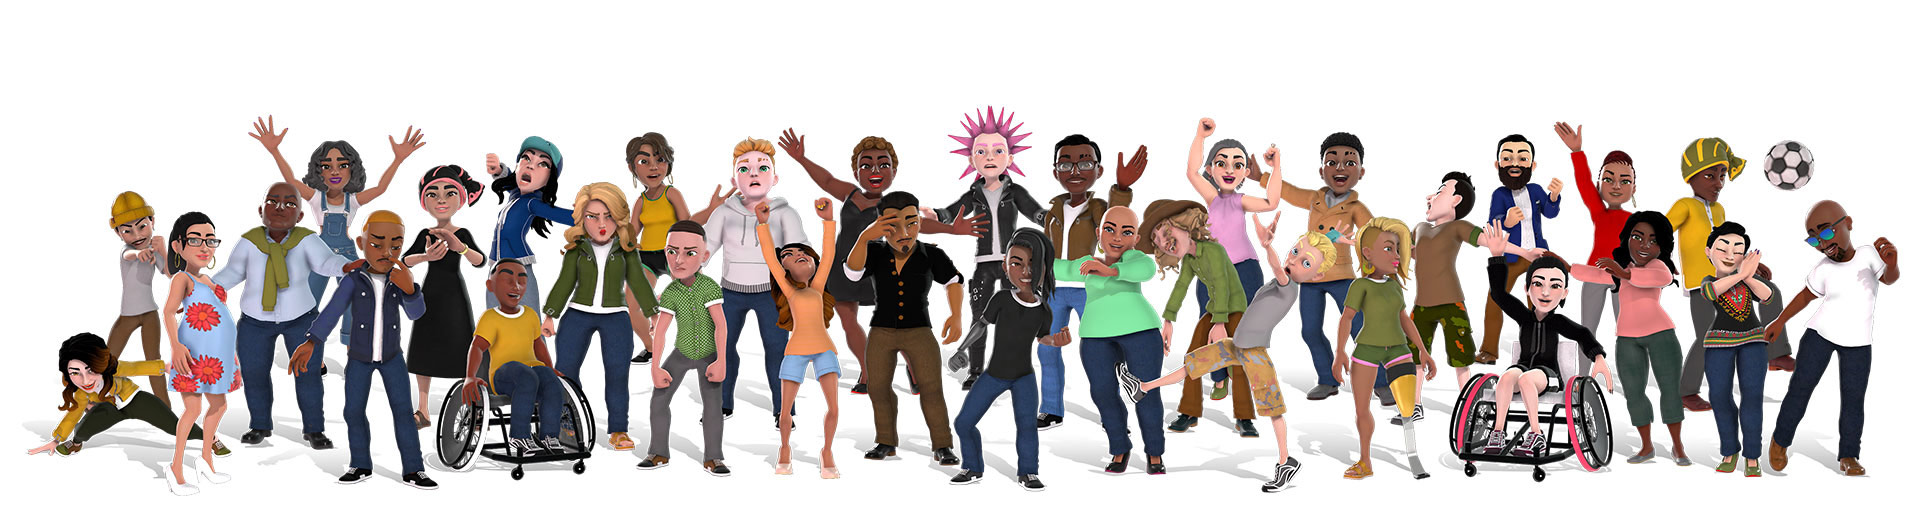 Avataři Xbox ukazující různorodou skupinu osob v různém oblečení